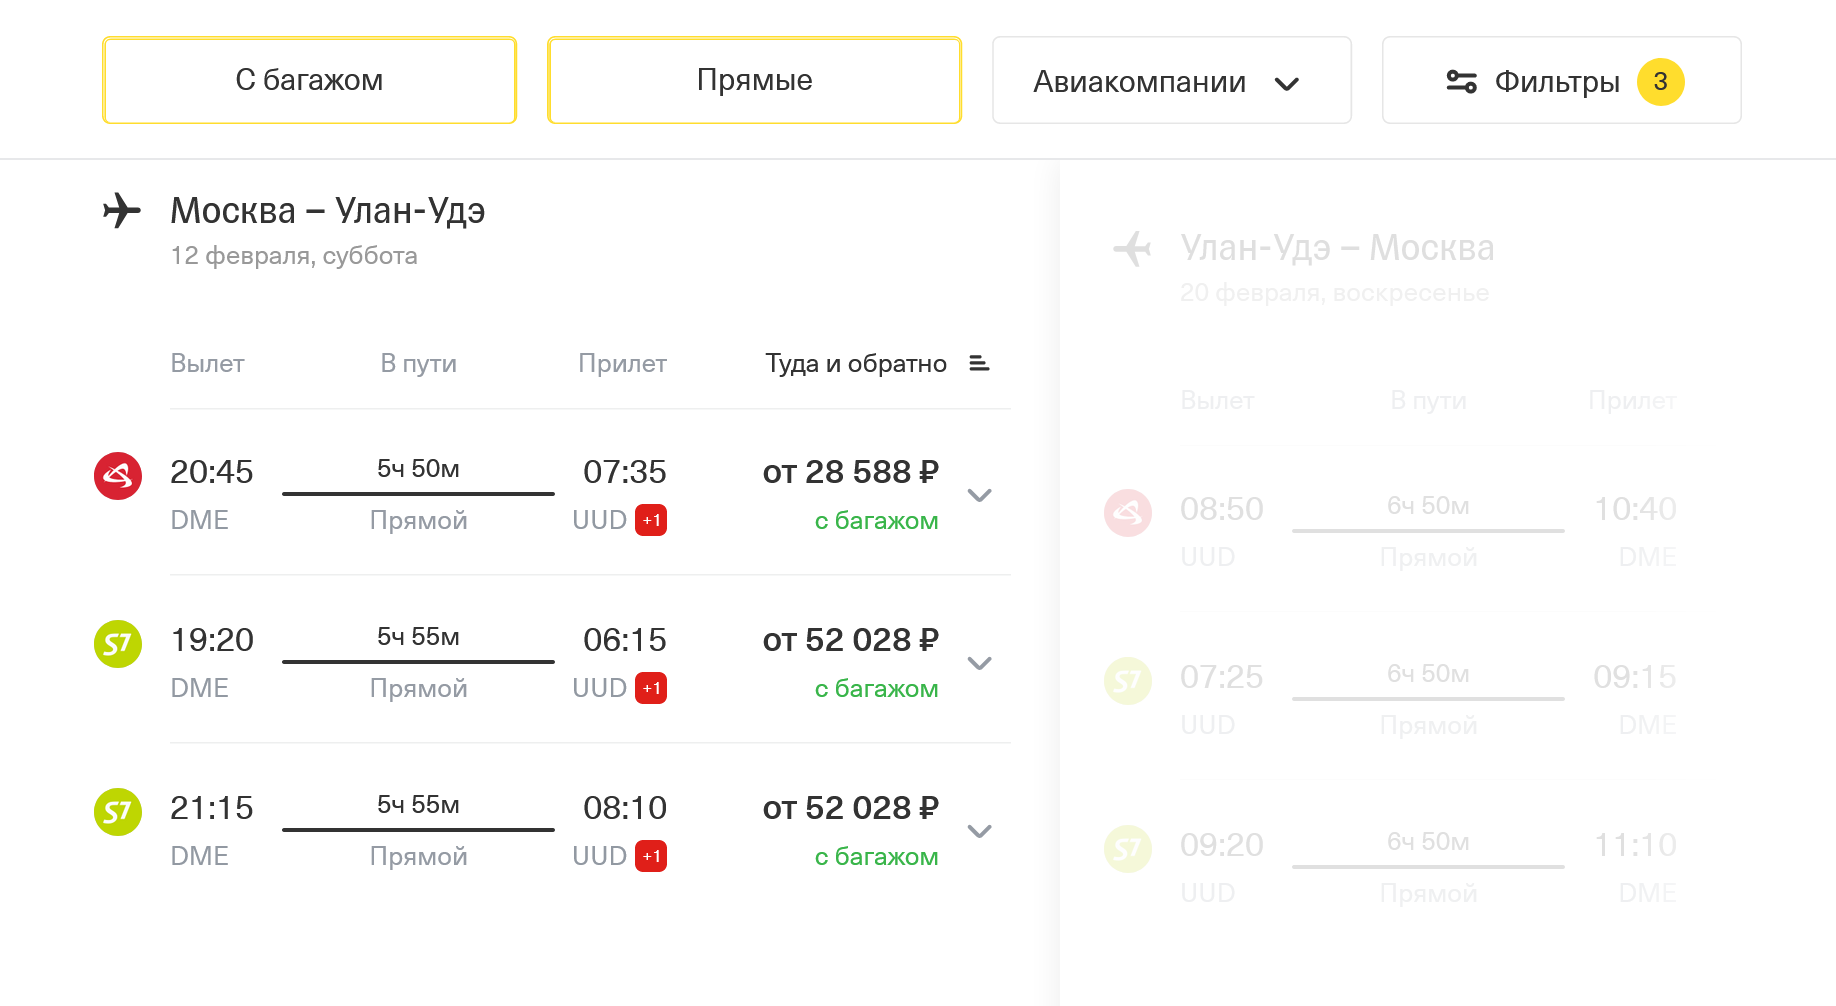 Перелет Москва — Улан-Удэ займет 5 часов 55 минут и в феврале обойдется в 28 588 ₽ на двоих с багажом. Источник: tinkoff.ru